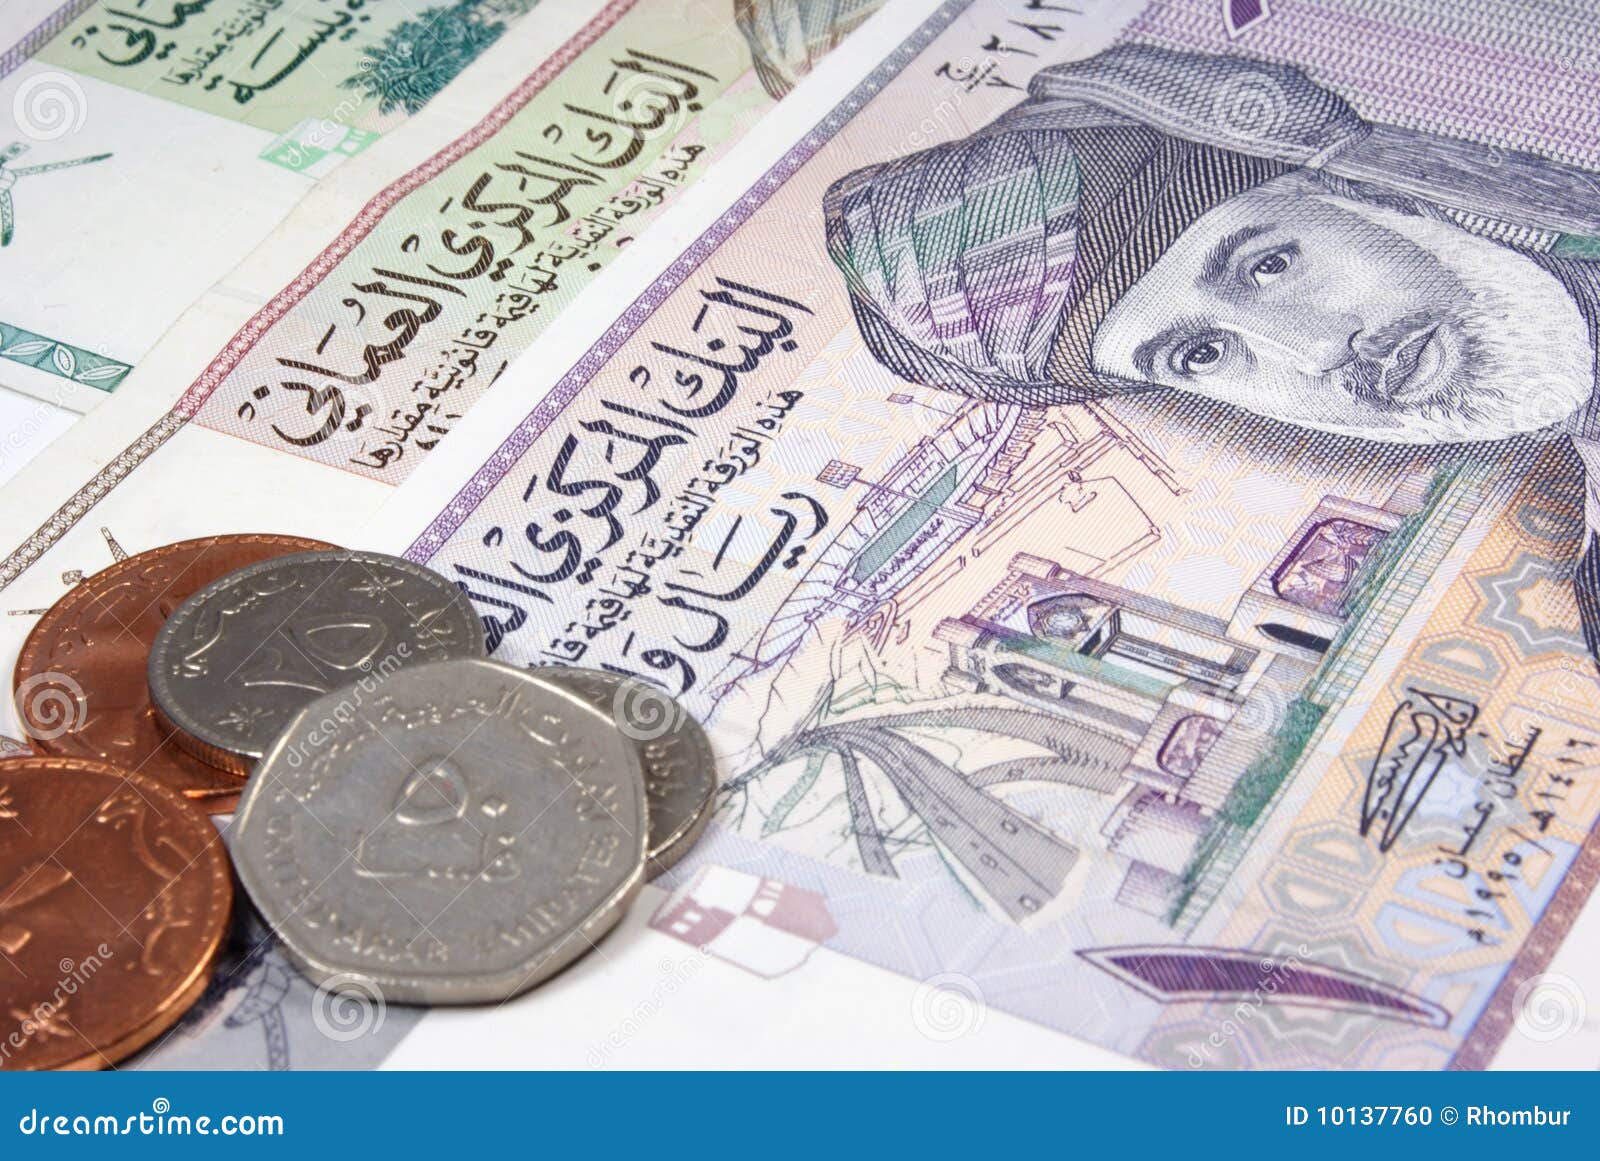 Менять доллары на дирхамы. Деньги Омана. Экономика Омана. Оманские деньги фотографии. Центральный банк Омана.